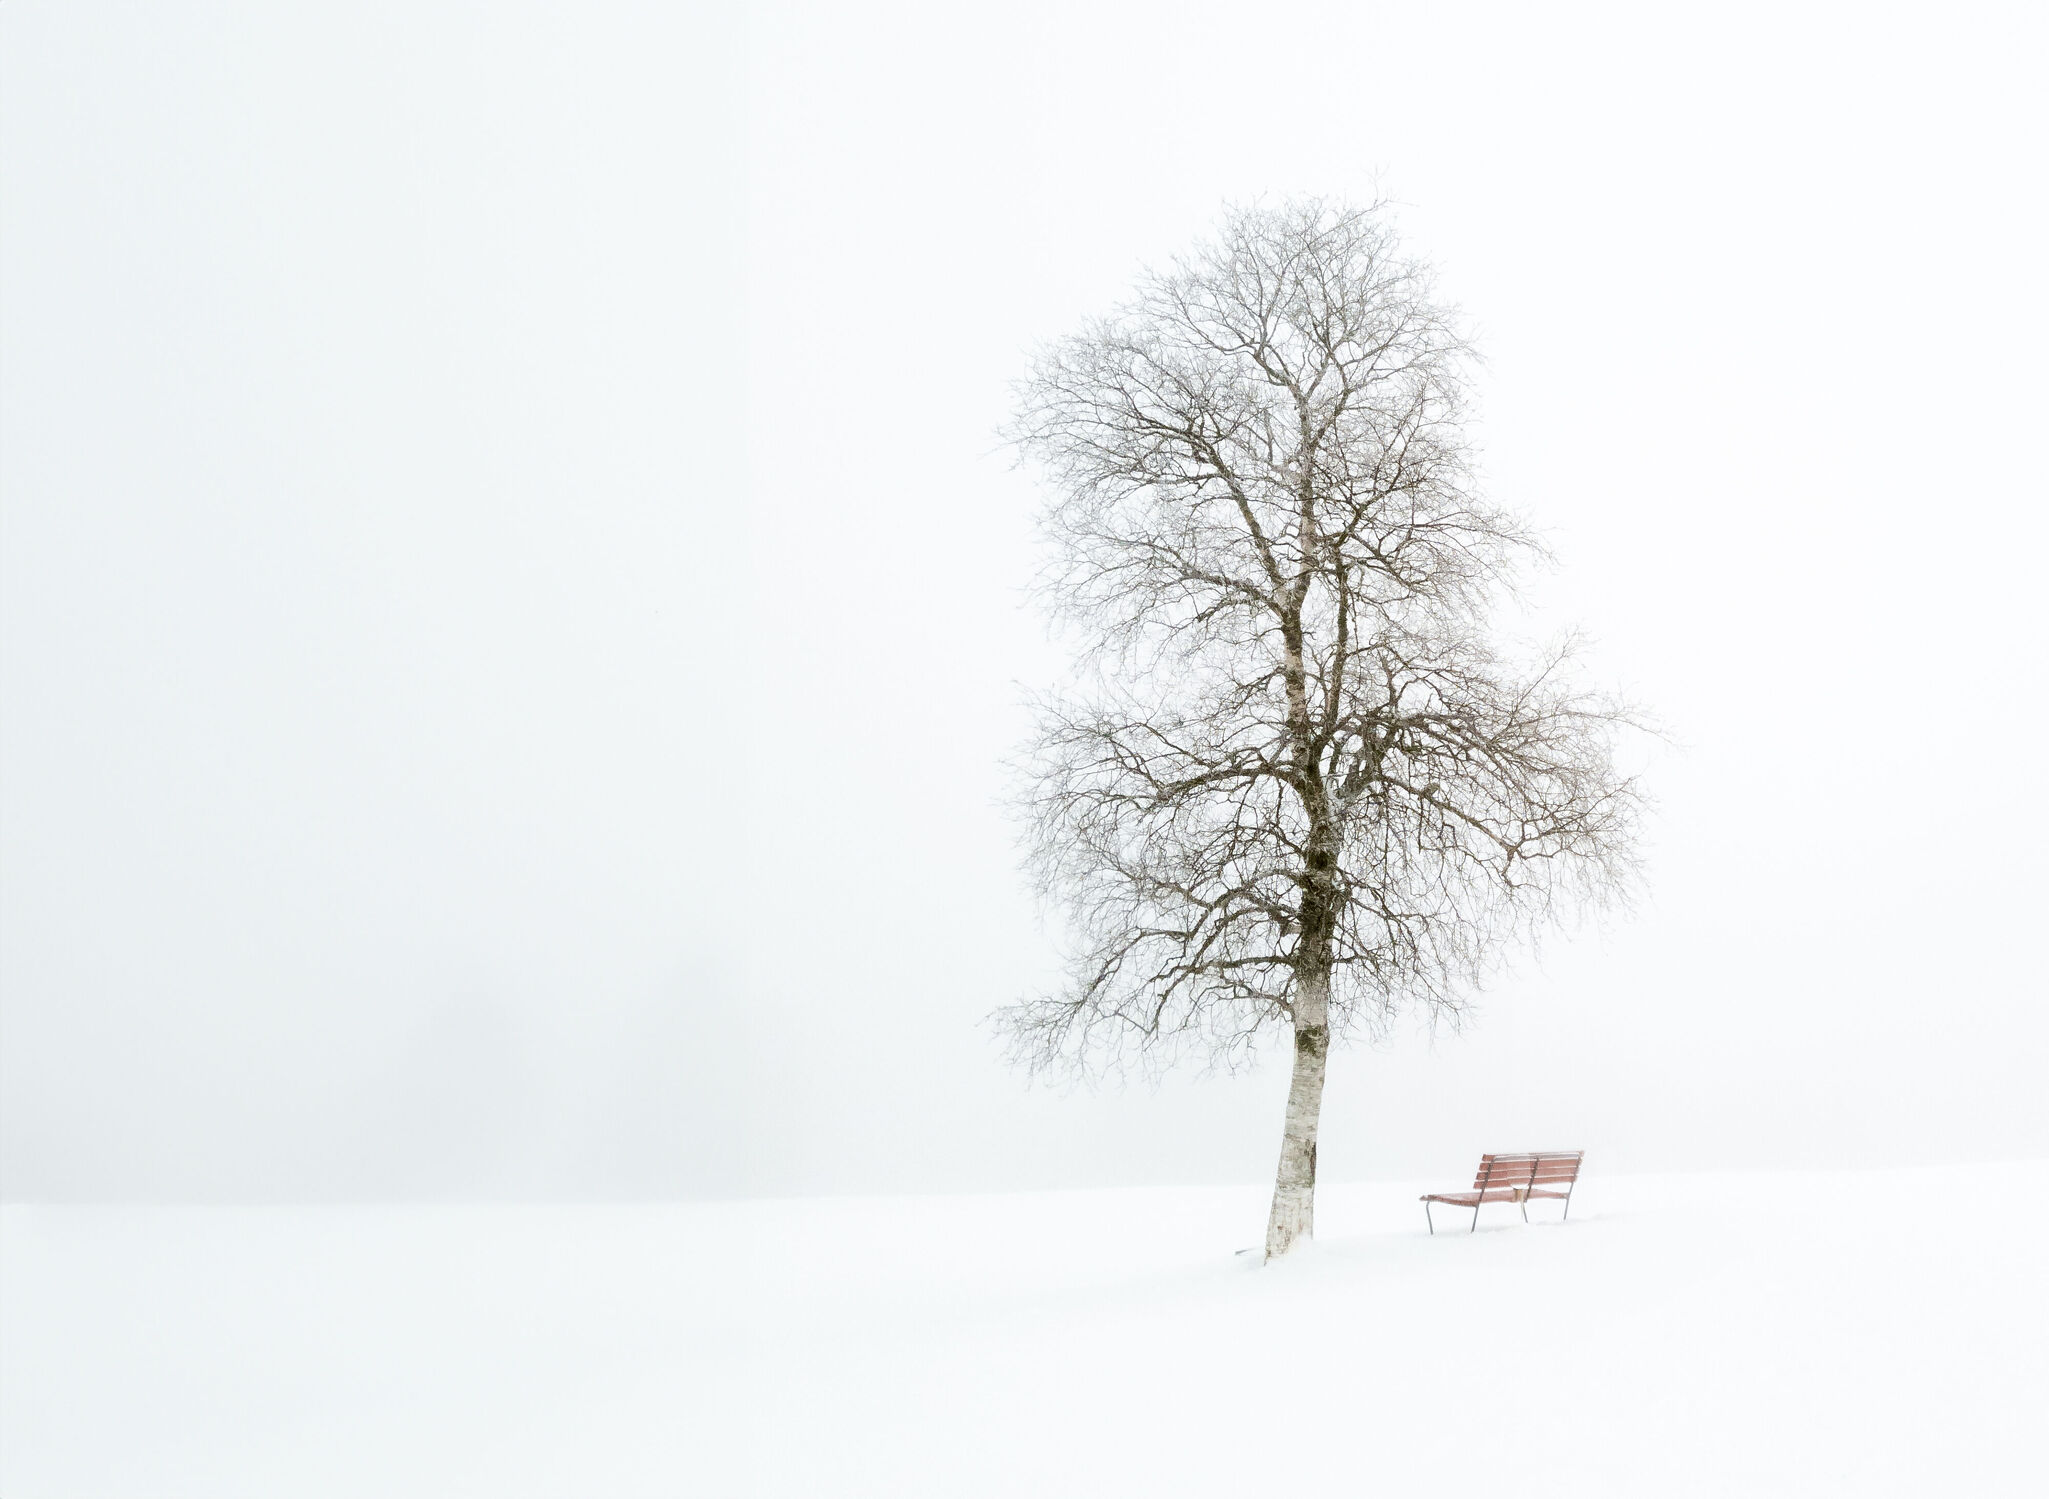 Bild mit Schnee, Nebel, Baum, weiss, Bank, Sitzbank, schneebedeckt, Farblos, Kontrastarm, Weisse Birke